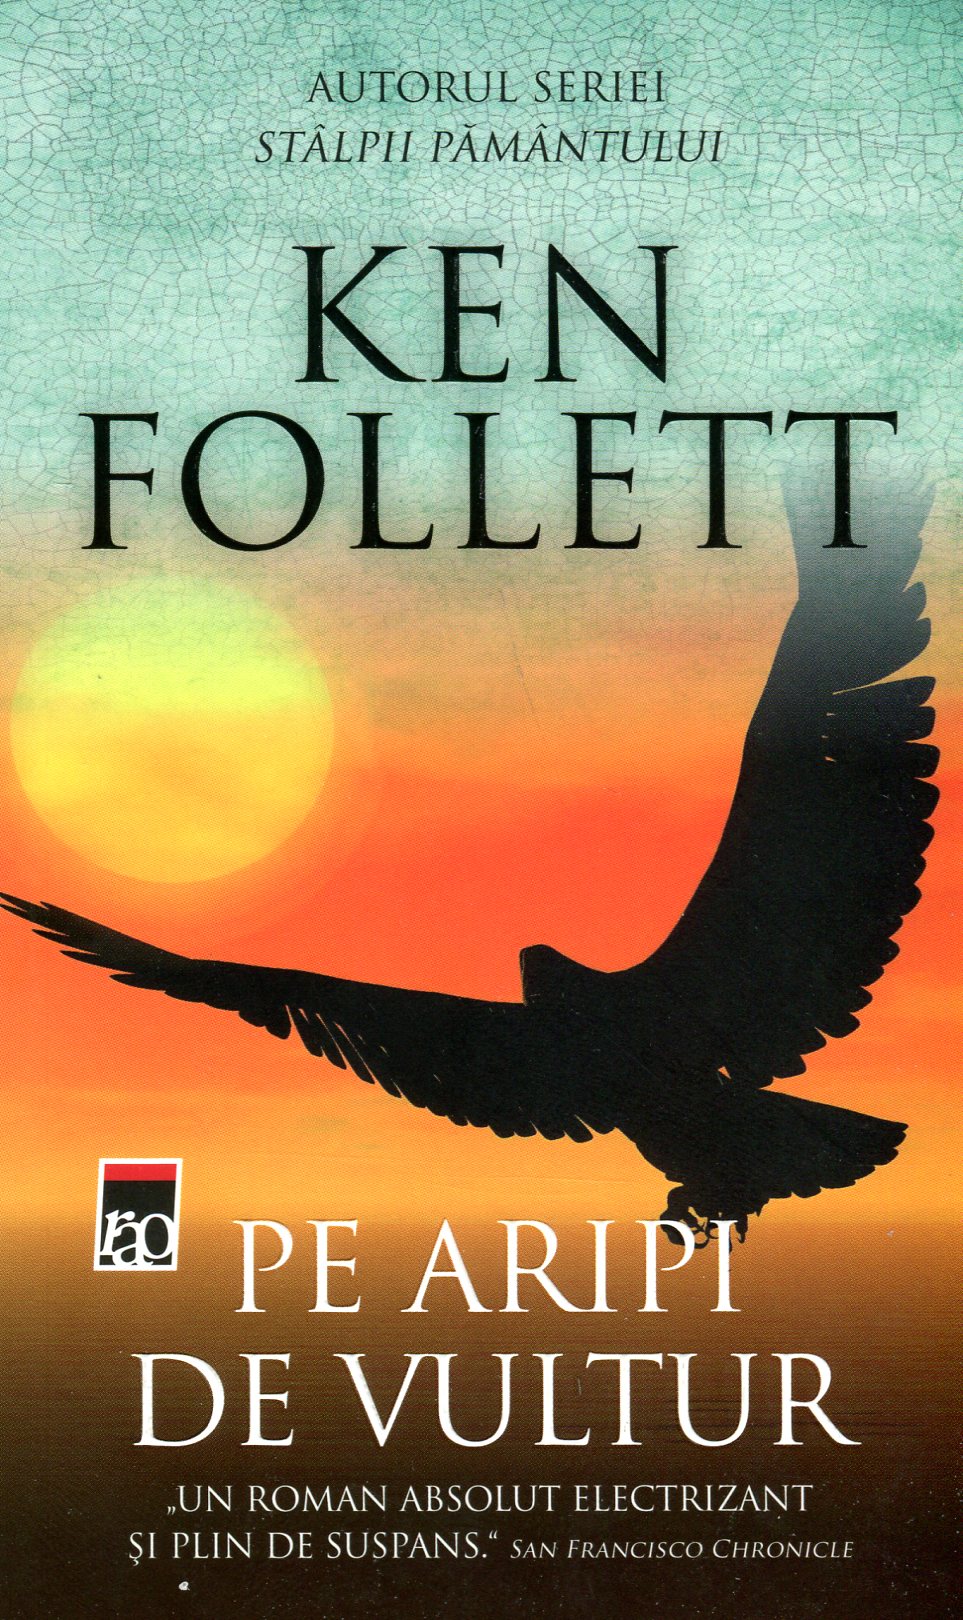 Pe aripi de vultur - Ken Follett